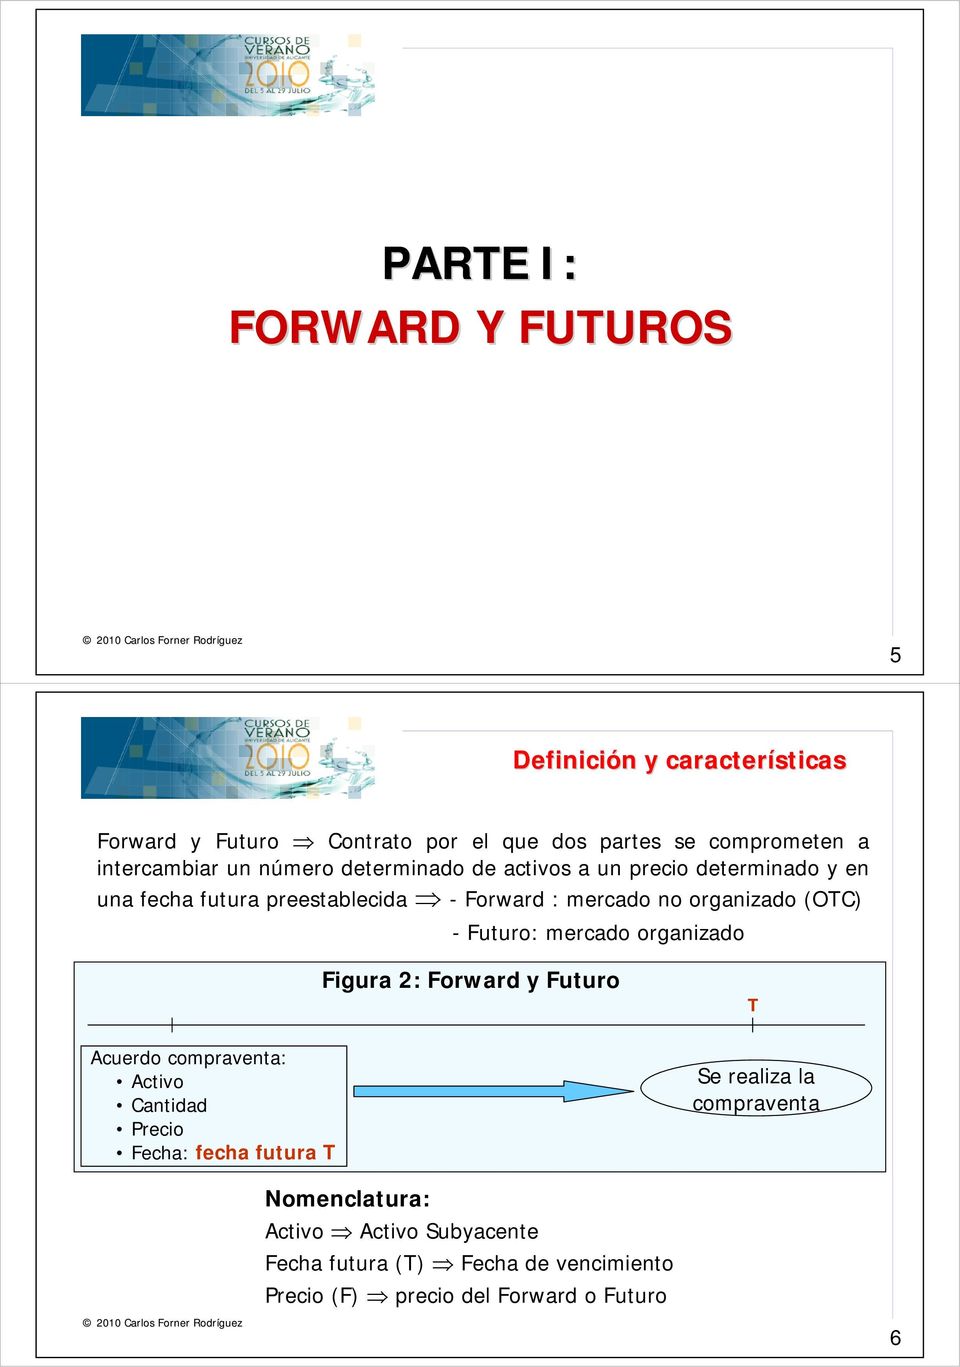 organizado (OTC) - Futuro: mercado organizado Figura 2: Forward y Futuro T Acuerdo compraventa: Activo Cantidad Precio Fecha: fecha